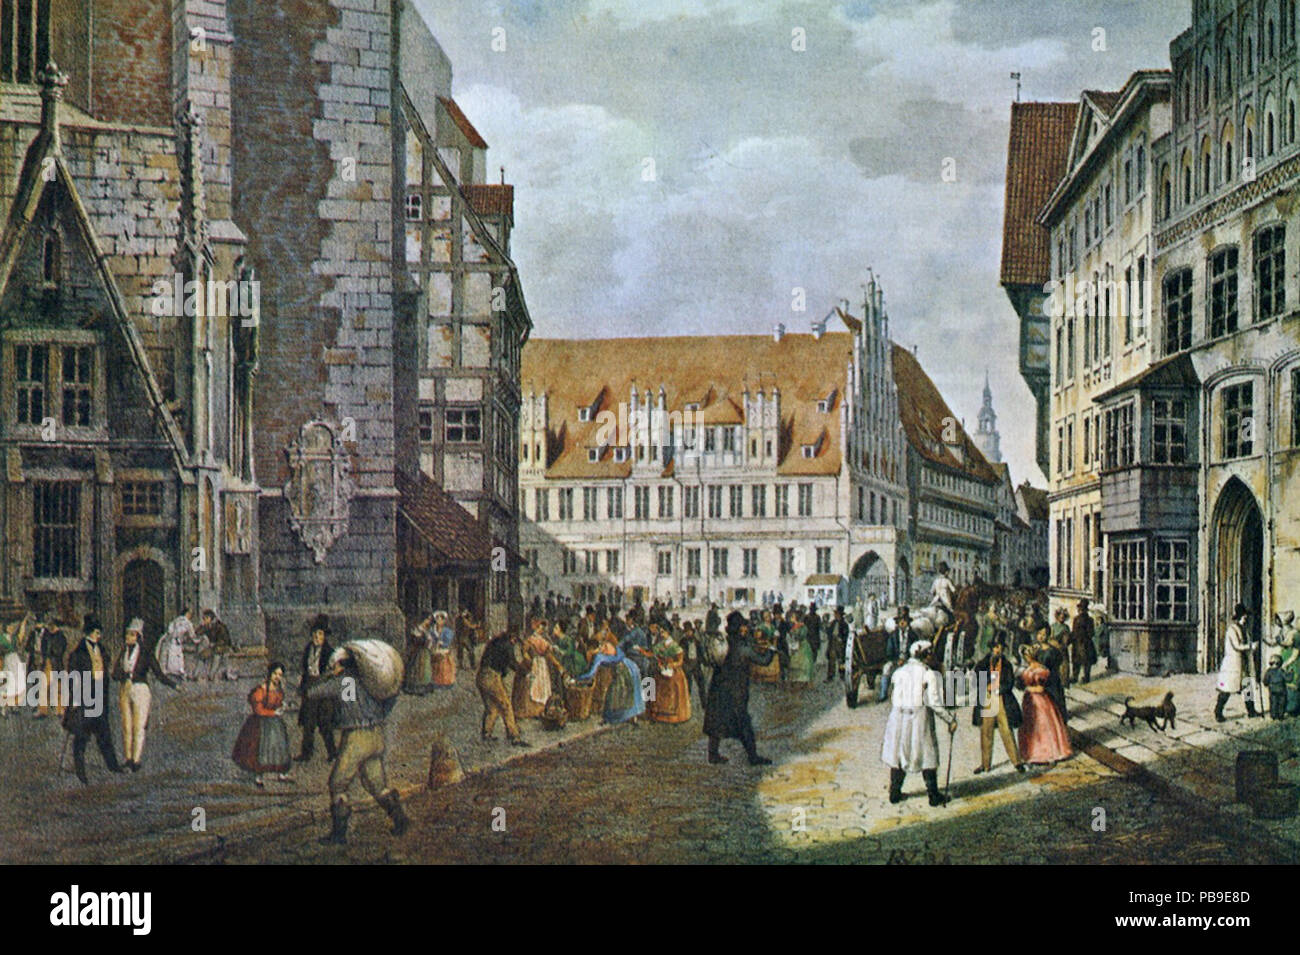 Marktplatz 999 Hannover. Farbige Lithographie von Rudolf Wiegmann 1834 Banque D'Images